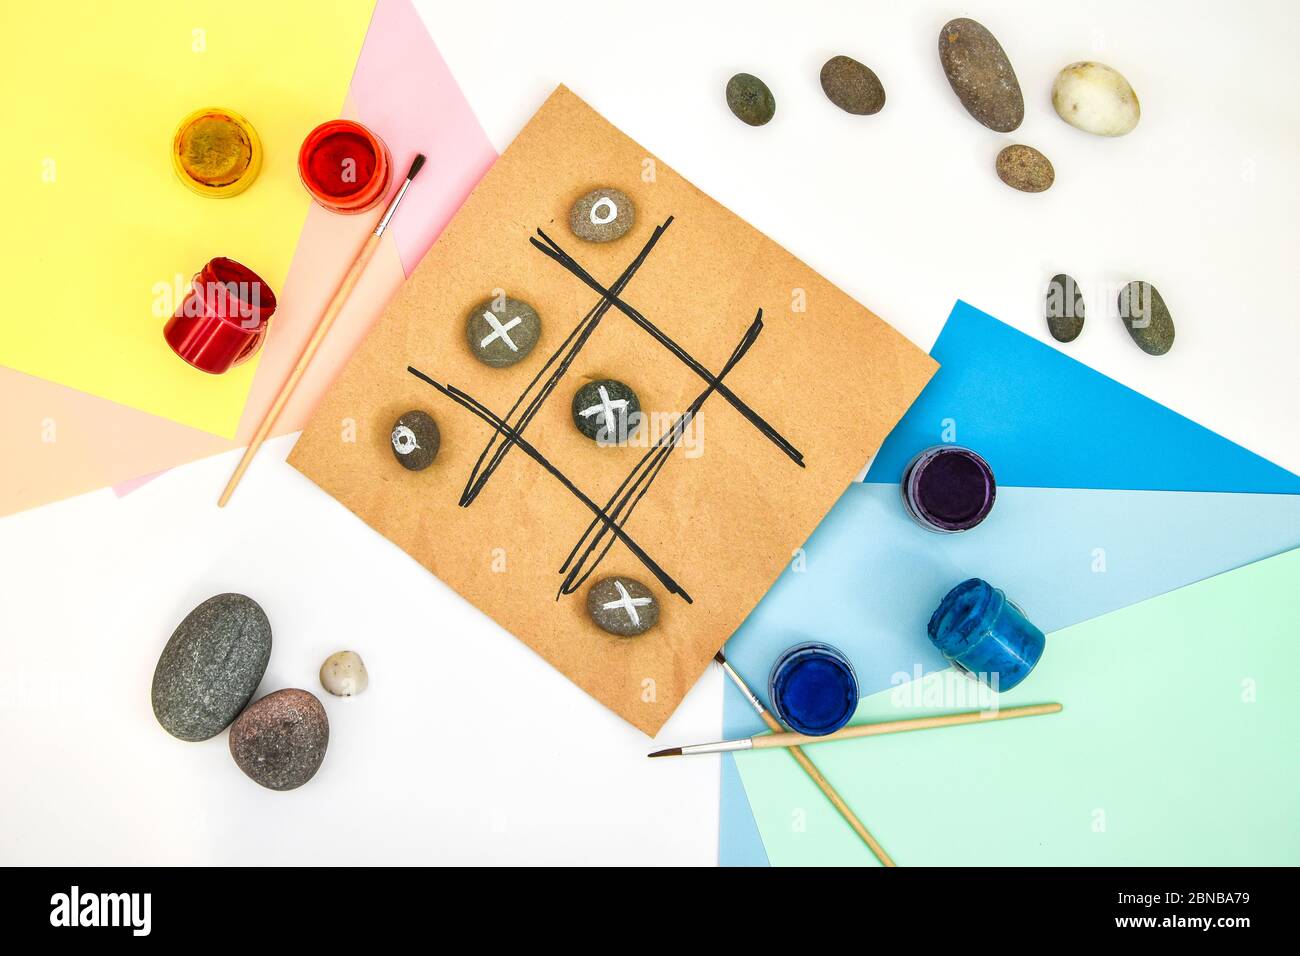 Draufsicht der Tic tac Zehen Spiel mit Steinen mit Naughts und Kreuze markiert. Kinder Kunstprojekt, ein Handwerk für Kinder. DIY-Konzept. Schritt für Schritt. Stockfoto